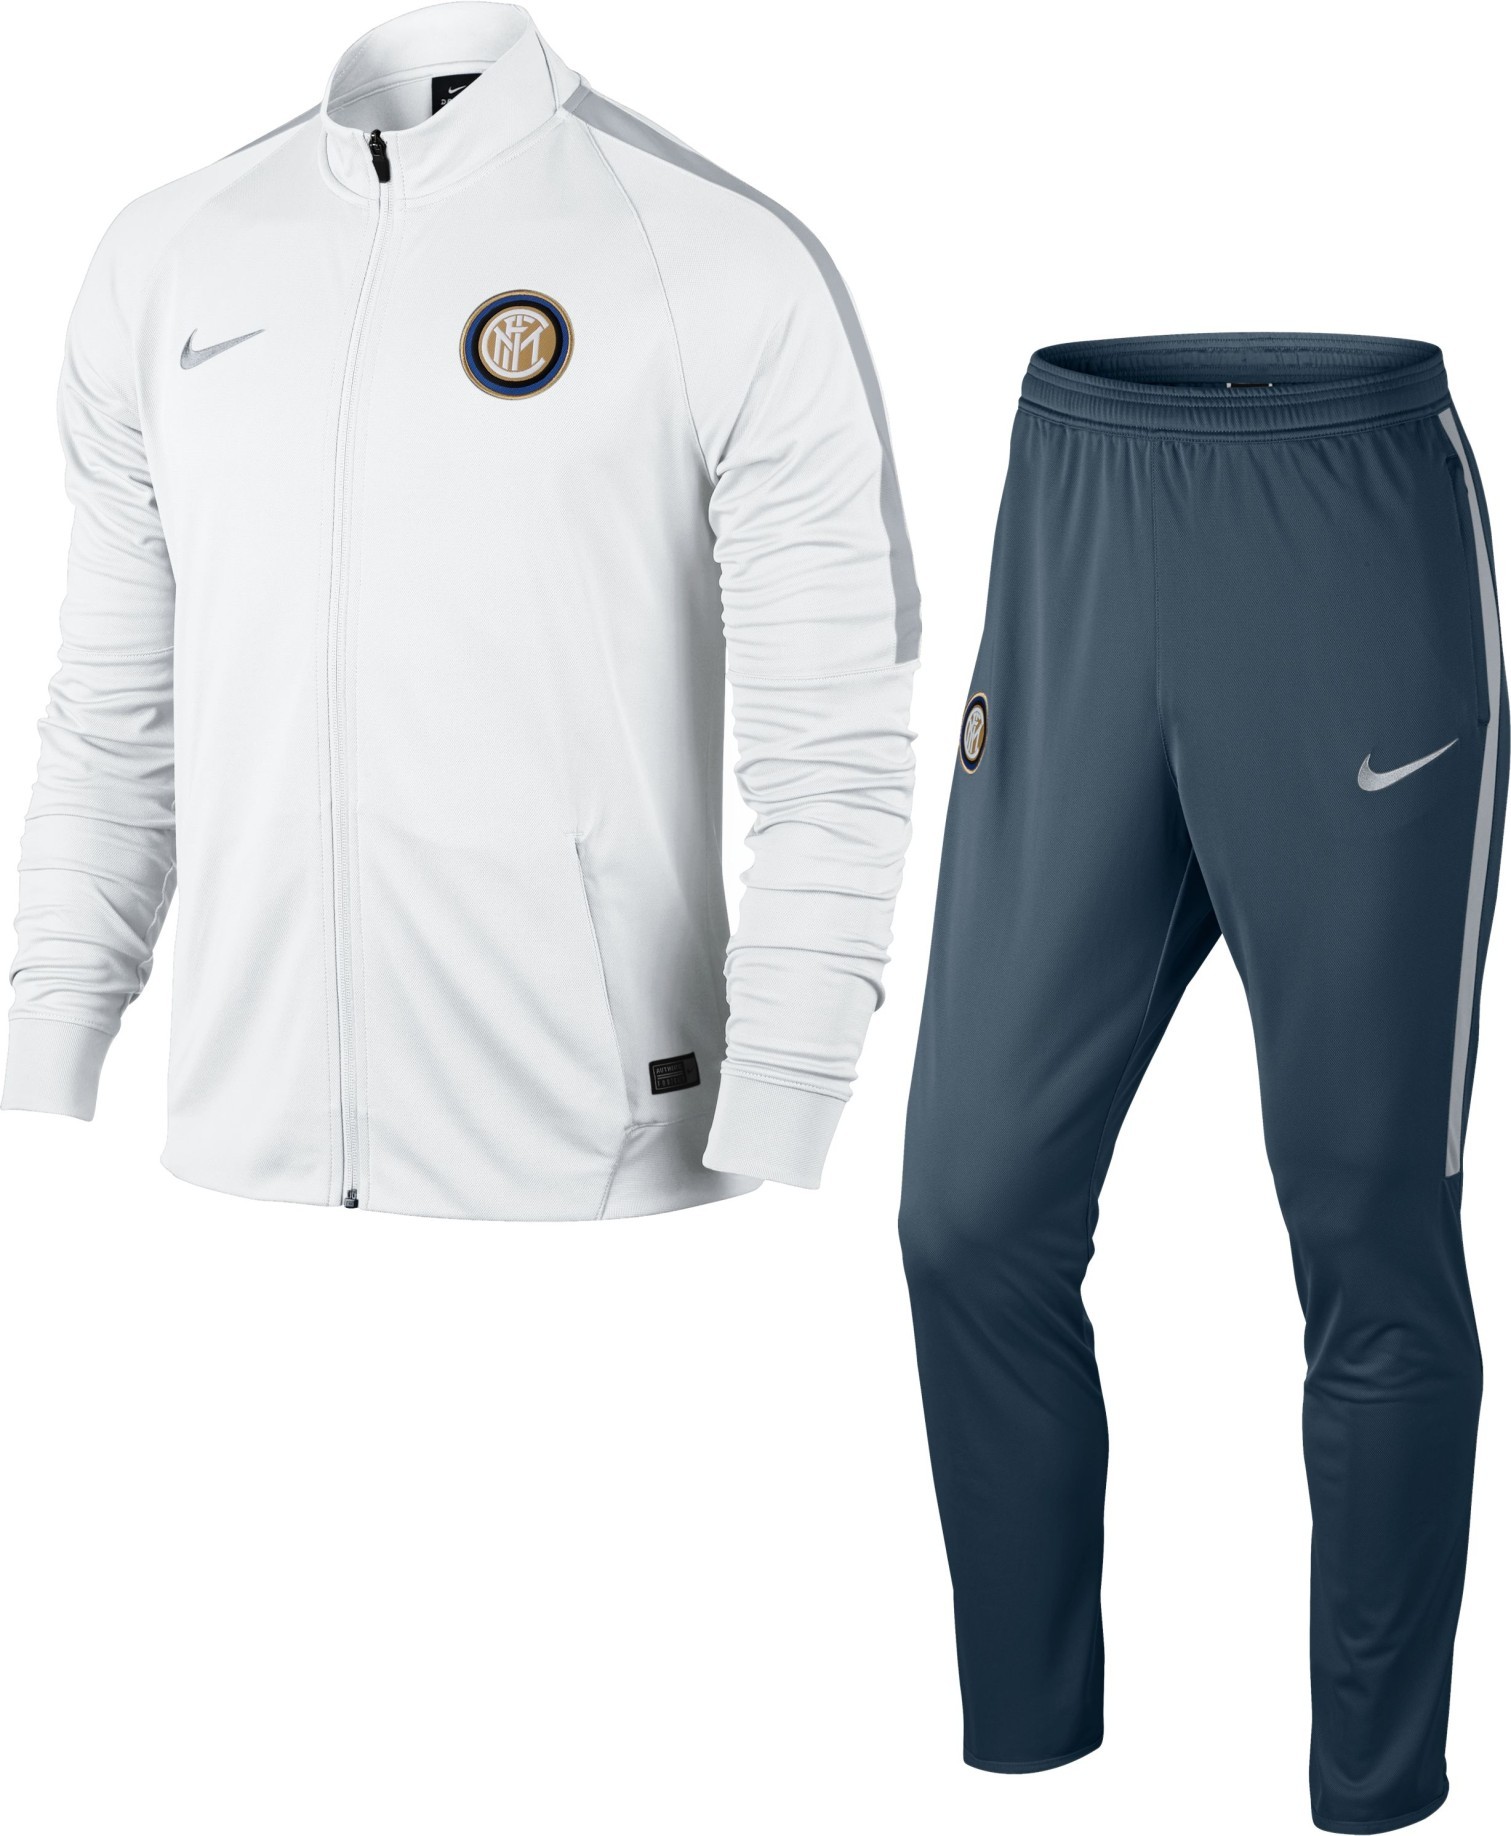 Tuta Inter pre-match Squad suit 16/17 colore Bianco Blu - Nike